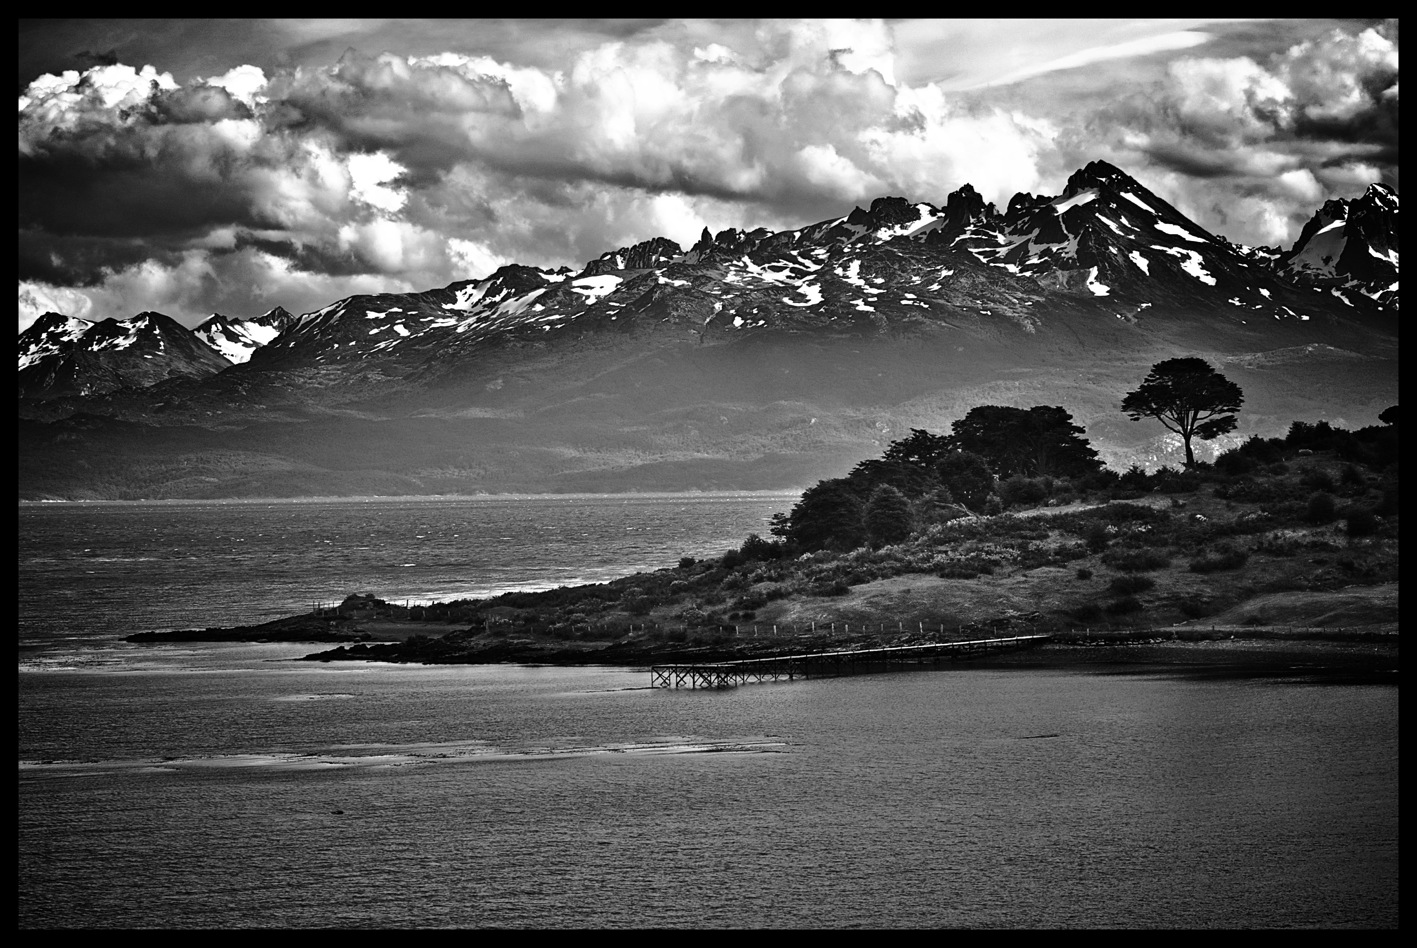 The Andes - Terra del Fuego